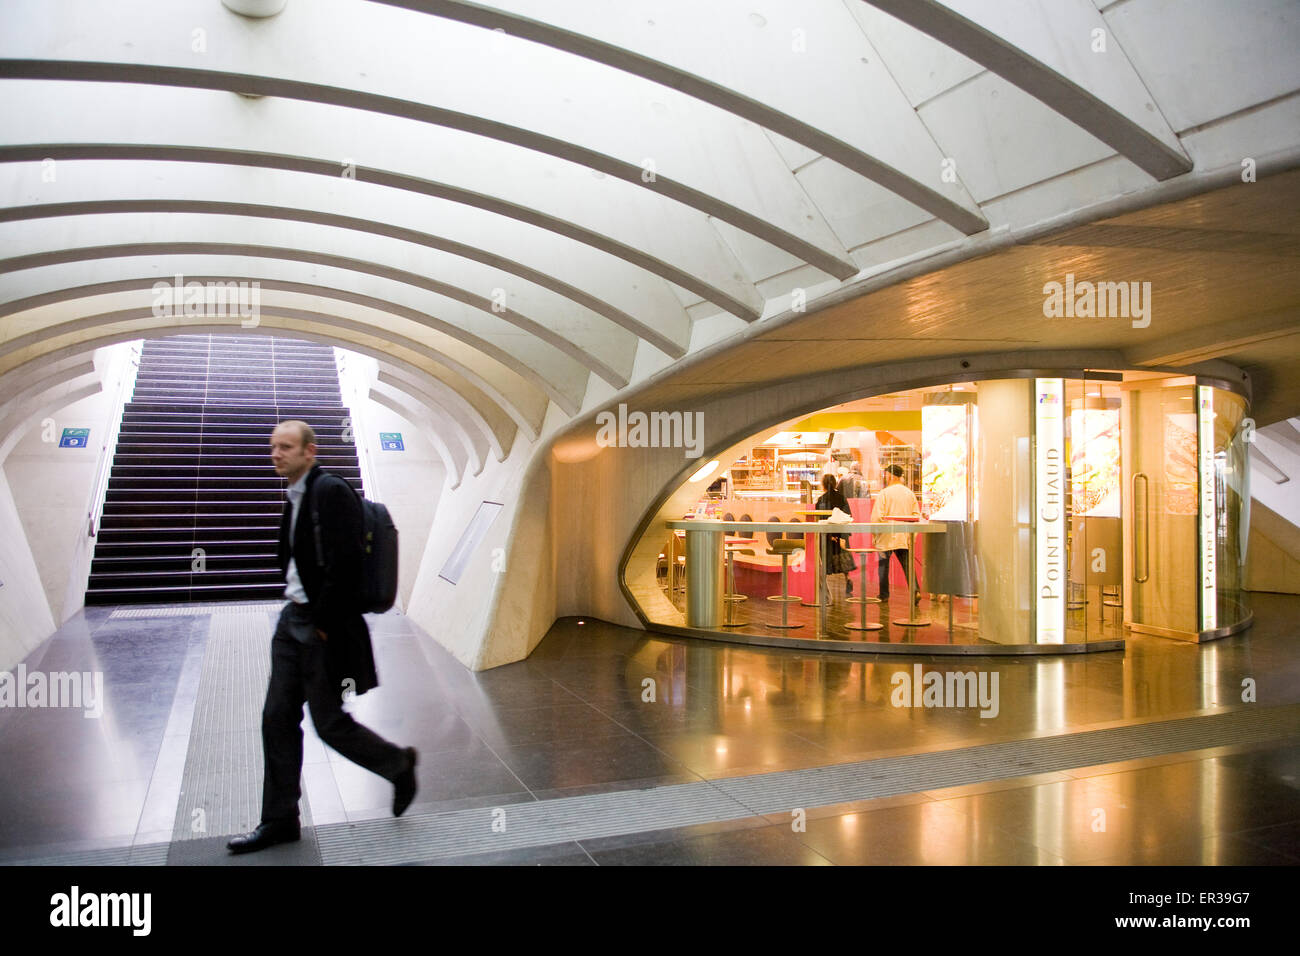 Europa, Belgien, Liege, Passage mit Geschäften und Bars am Bahnhof Liège-Guillemins, Architekt Santiago Calatrava Europ Stockfoto